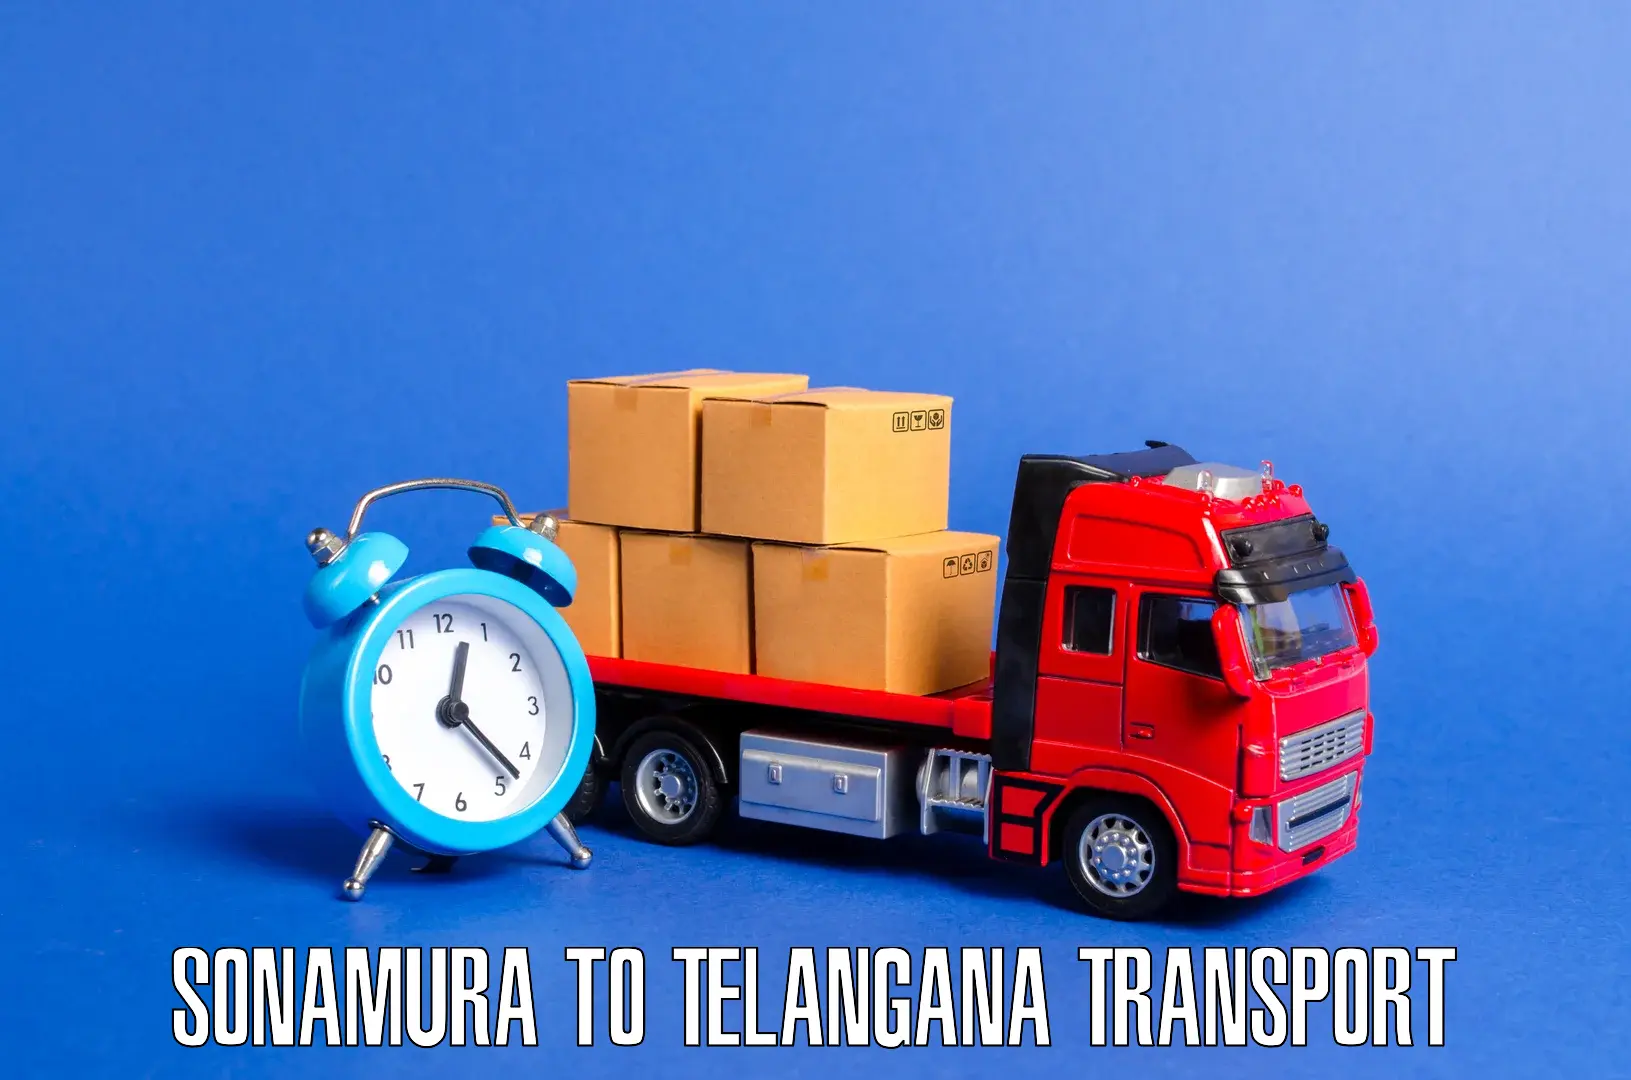 Furniture transport service Sonamura to Manuguru